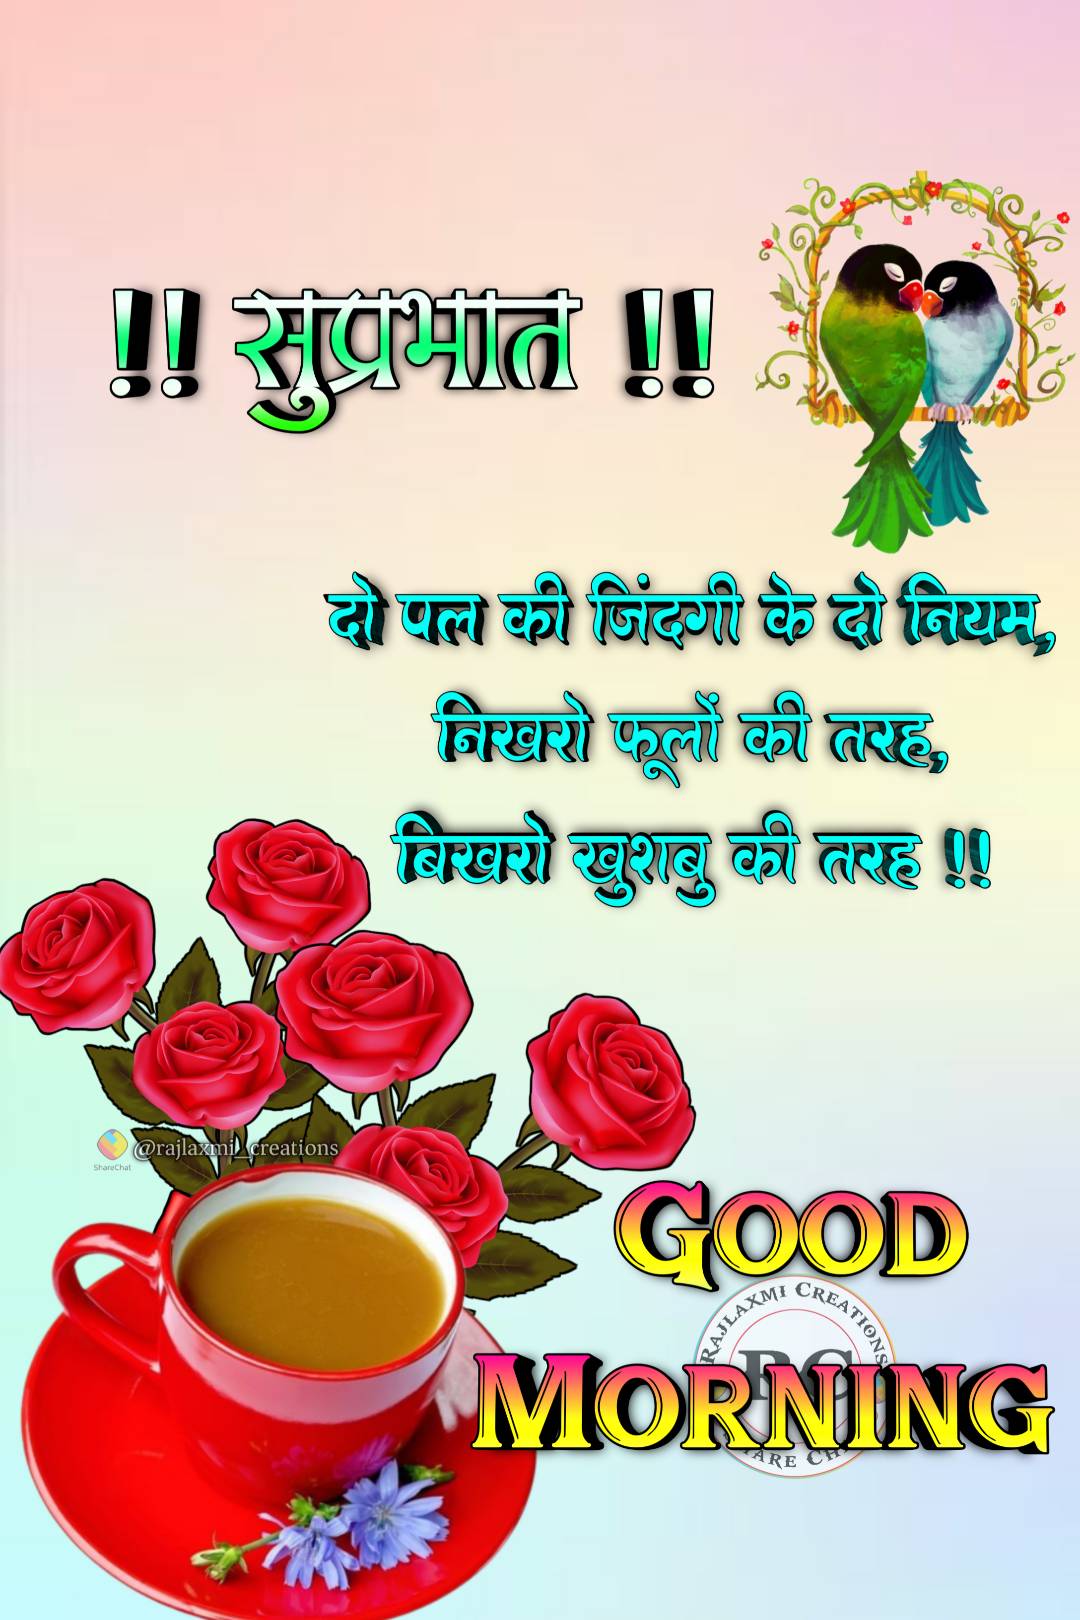 Good Morning Images Hindi And English ()